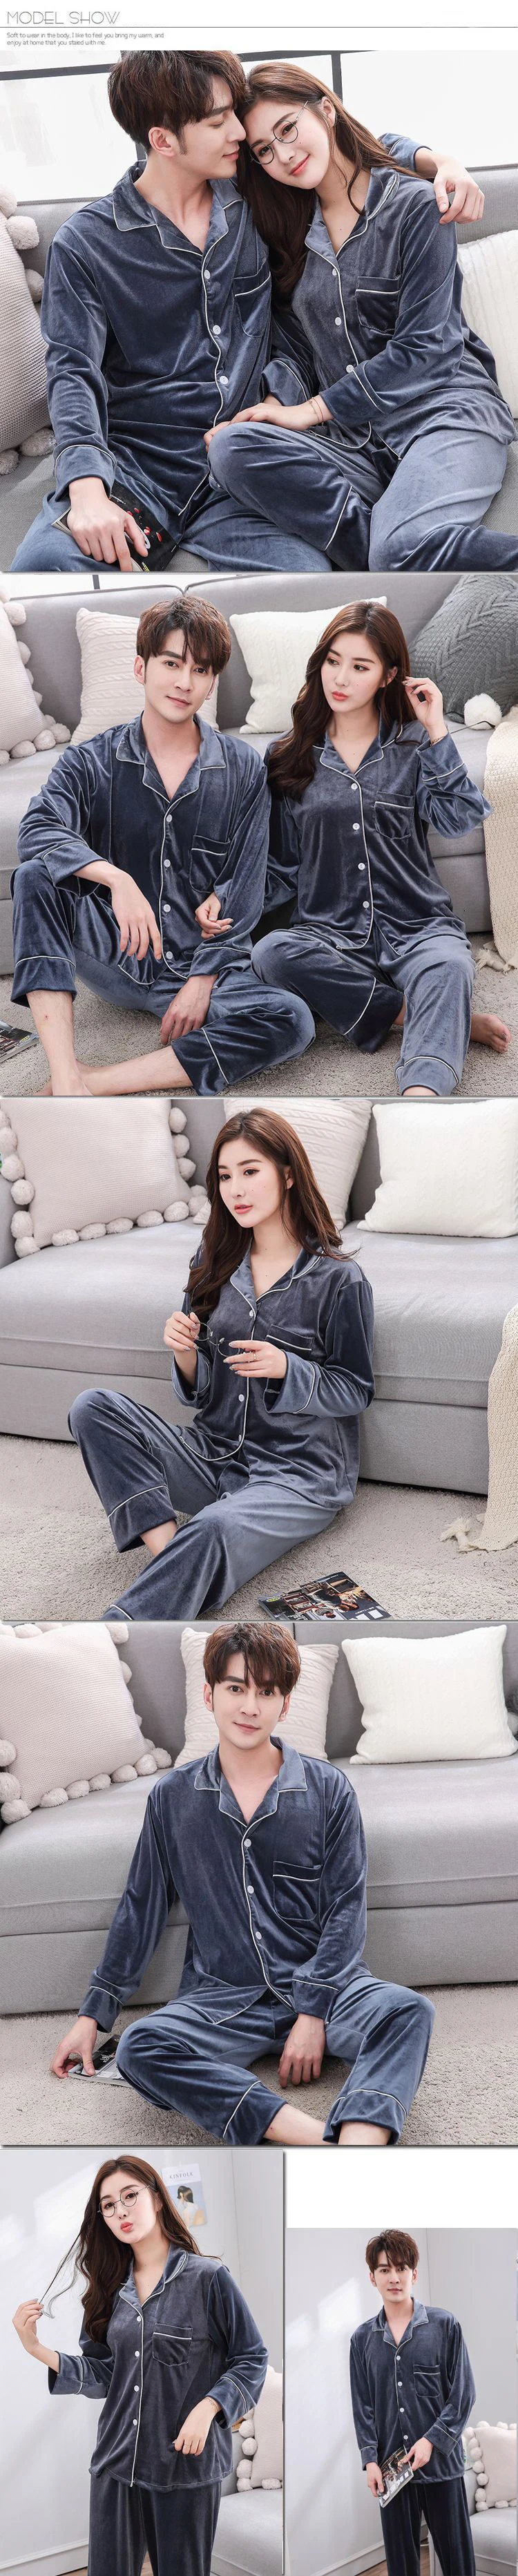 BZEL бархат пару пижамы комплект отложной воротник пижама с длинными рукавами домашняя пижама для мужчин влюбленных Одежда пижамы